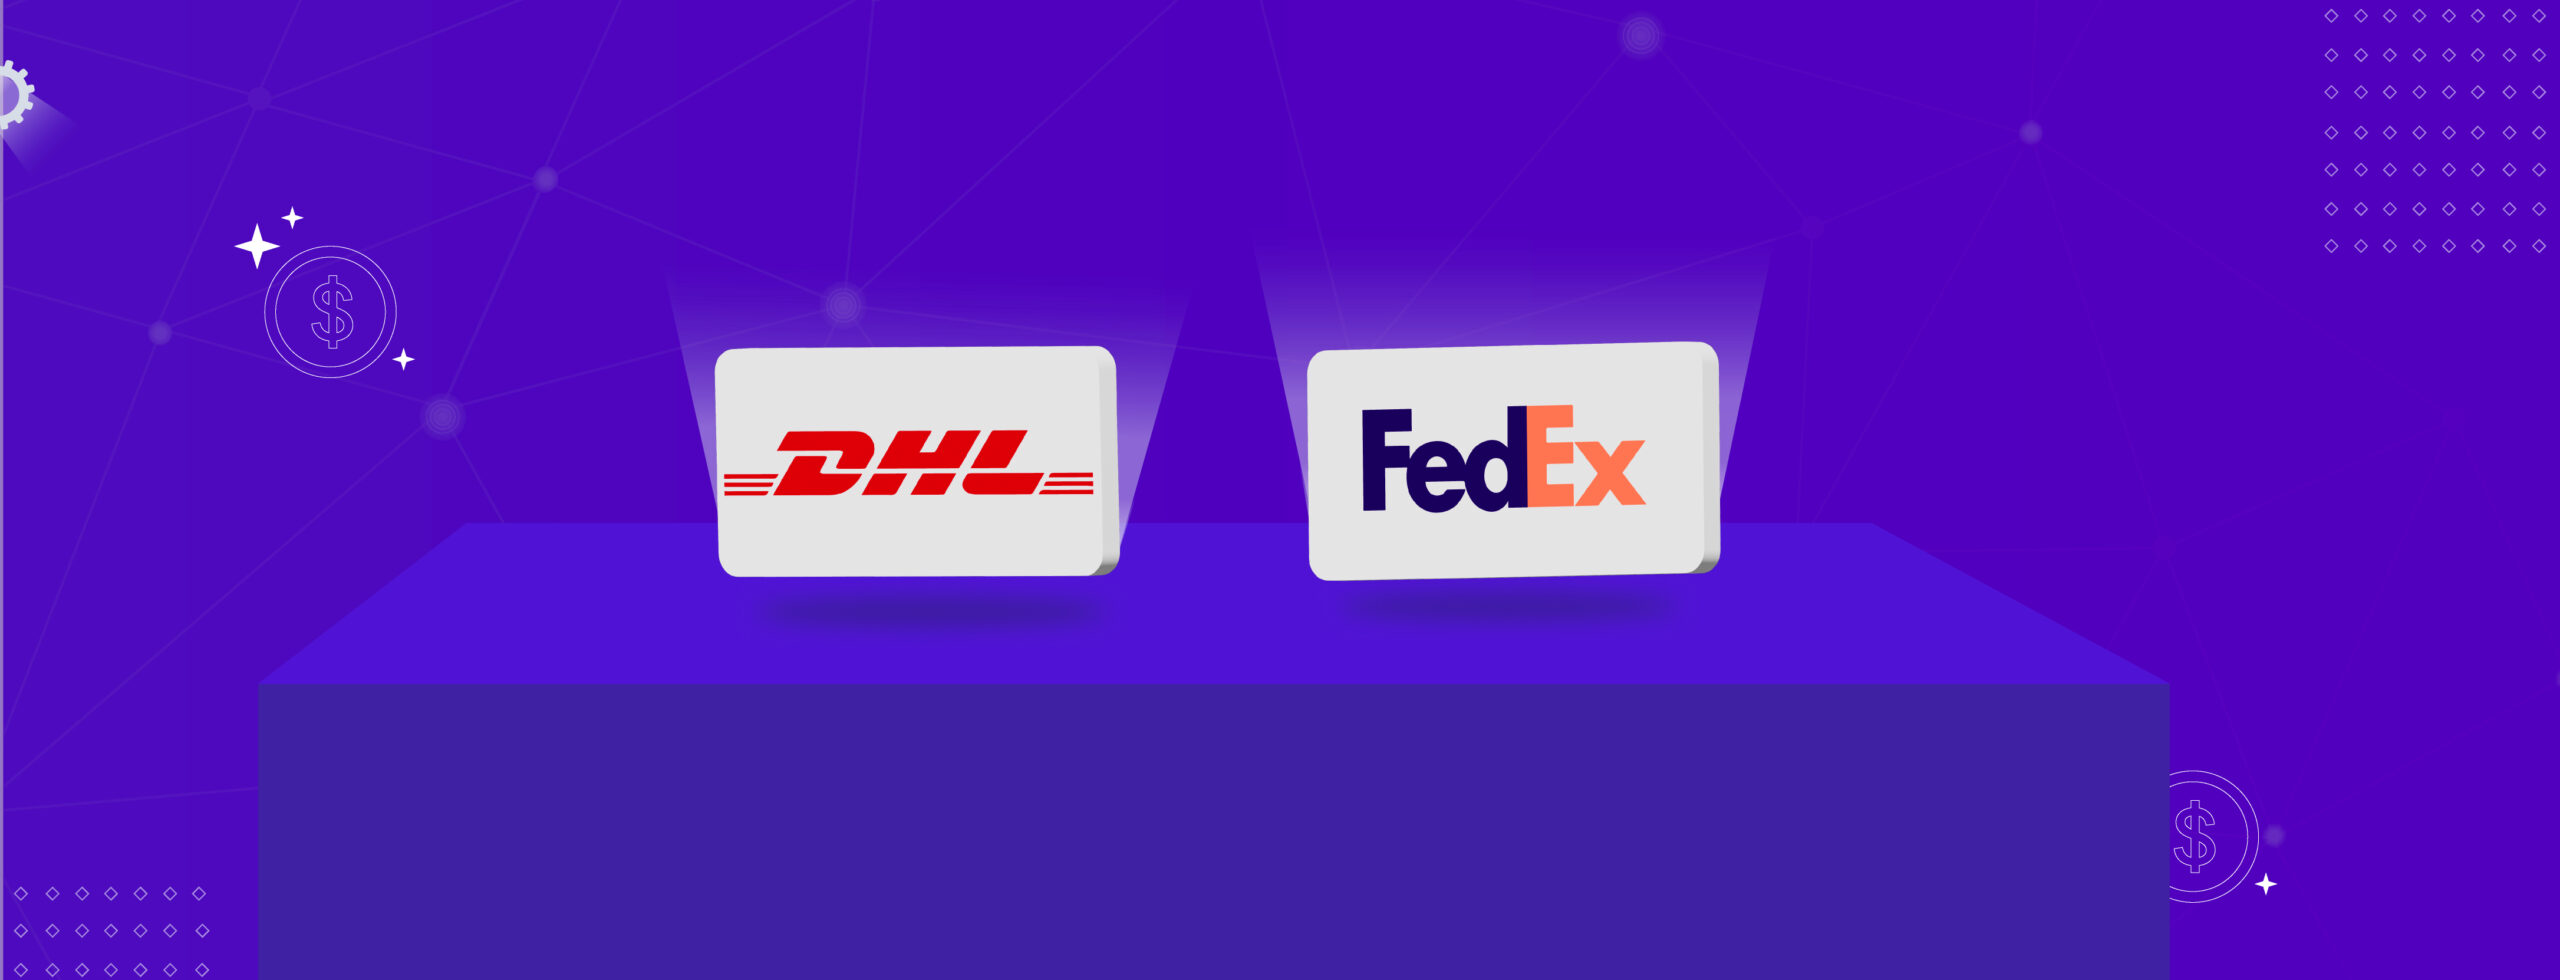 DHL and FedEx logos.